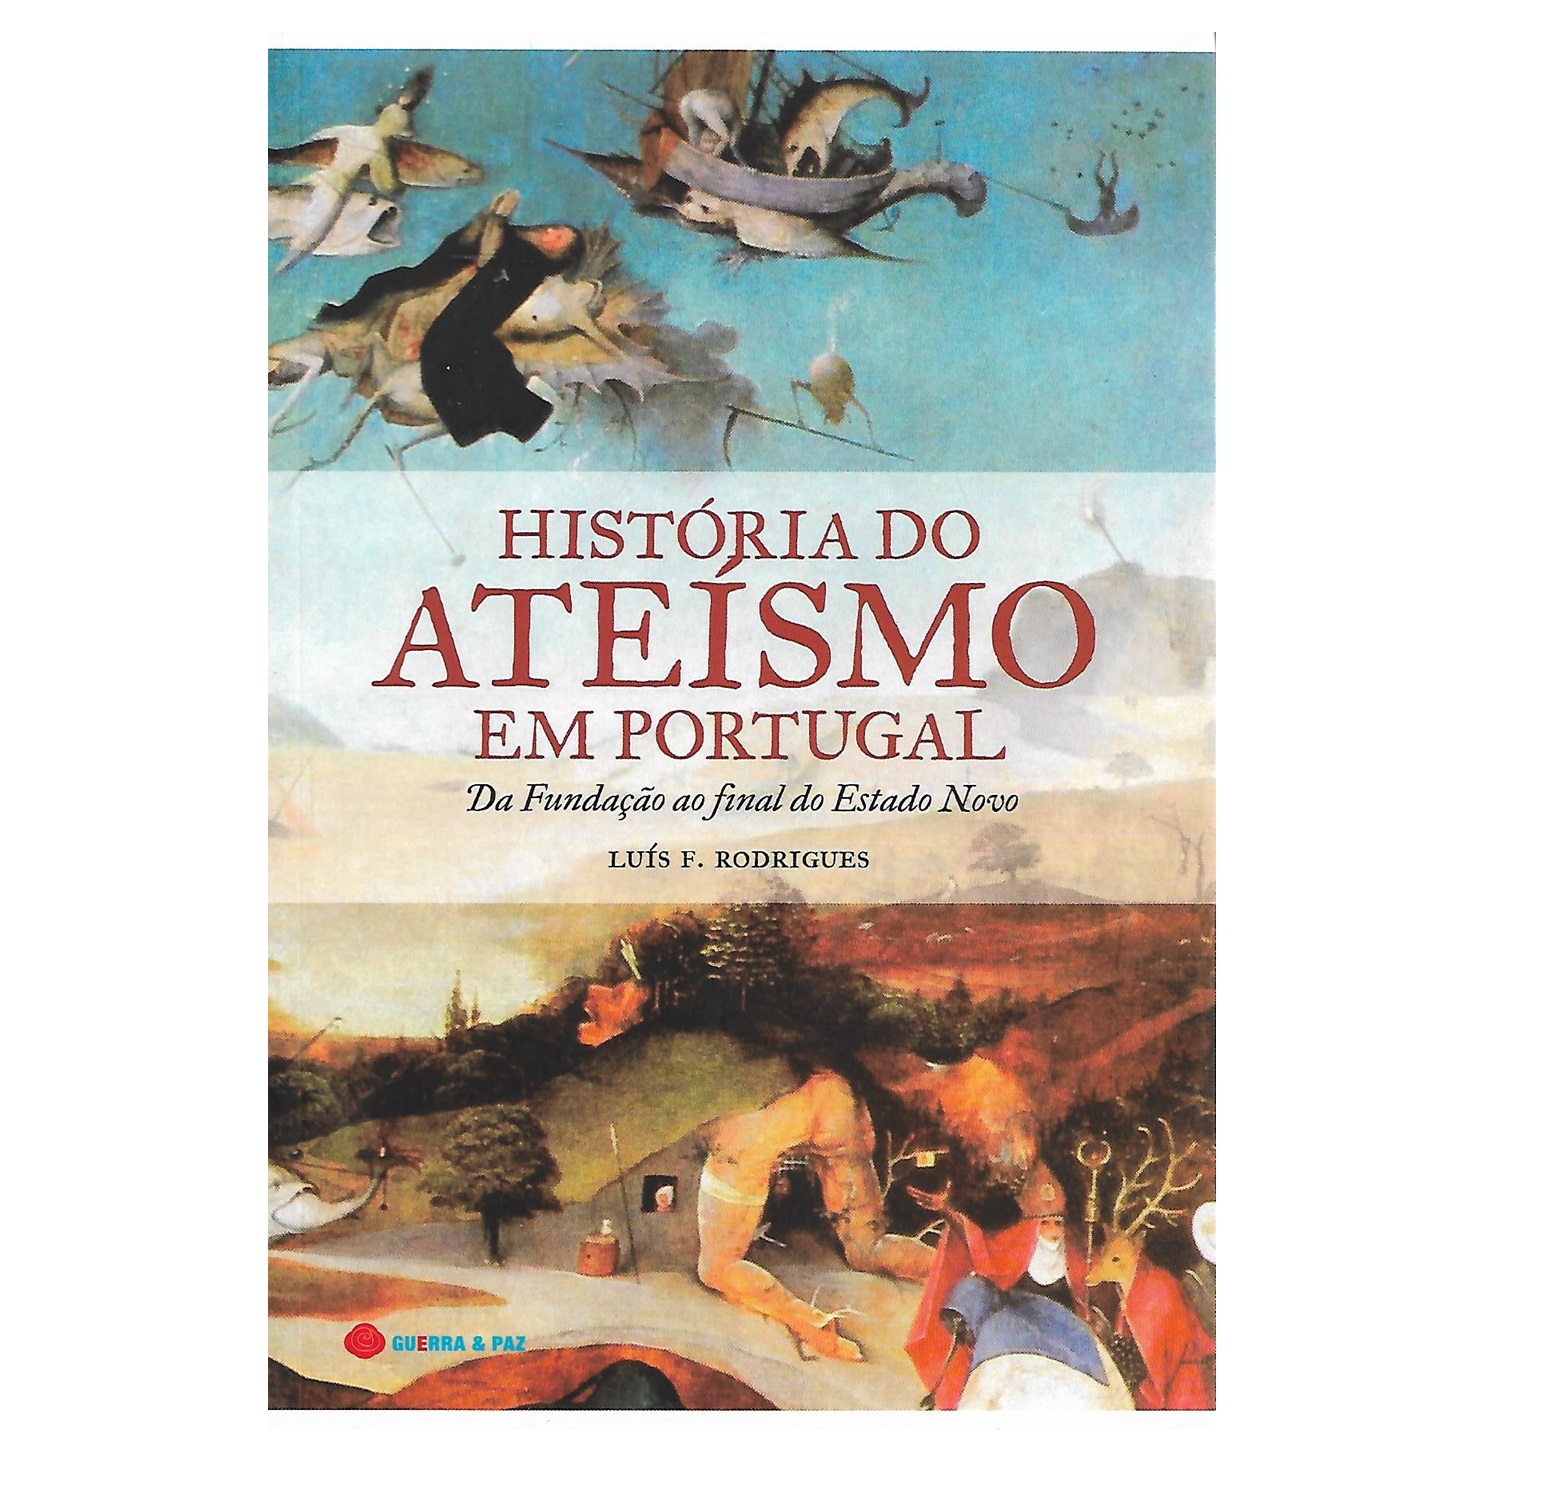 HISTÓRIA DO ATEÍSMO EM PORTUGAL